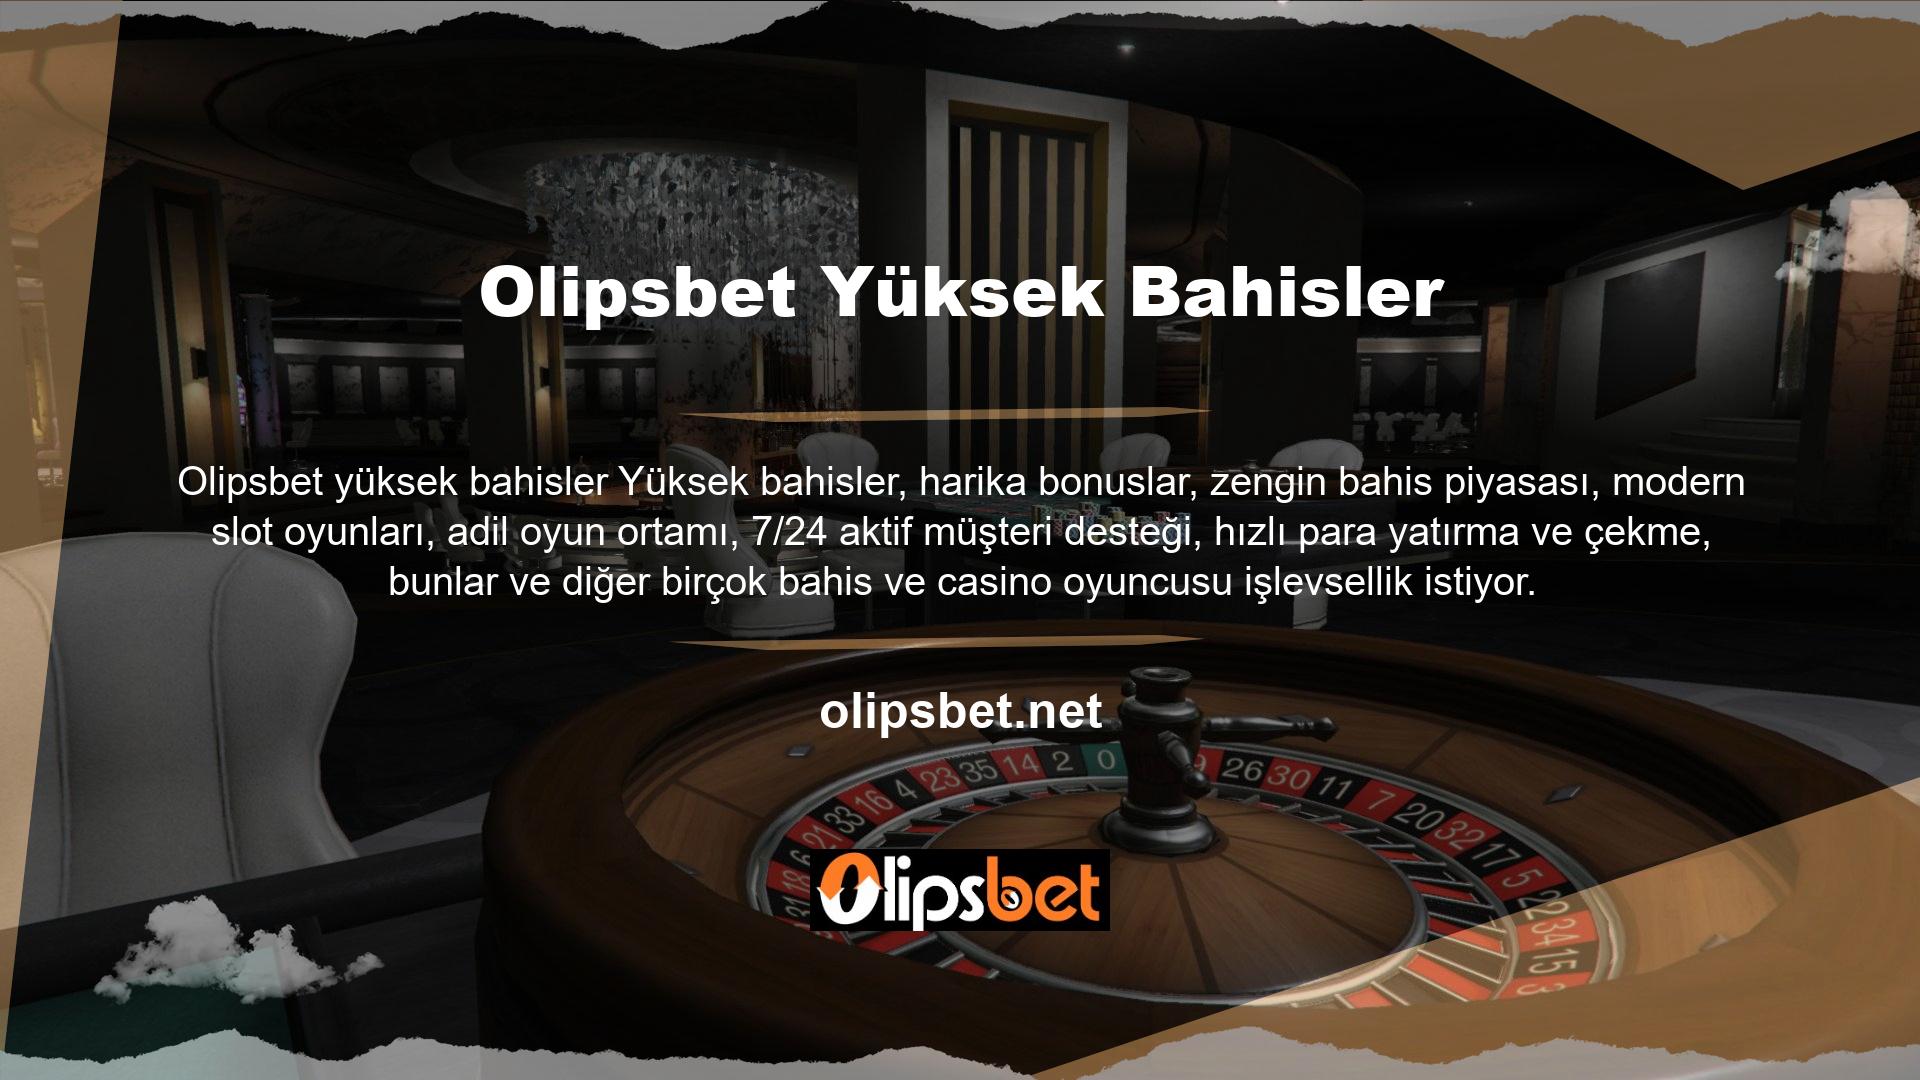 Sürekli toplanan bahis sitesi "Olipsbet katıldınız mı?" sloganını ortaya koyuyor